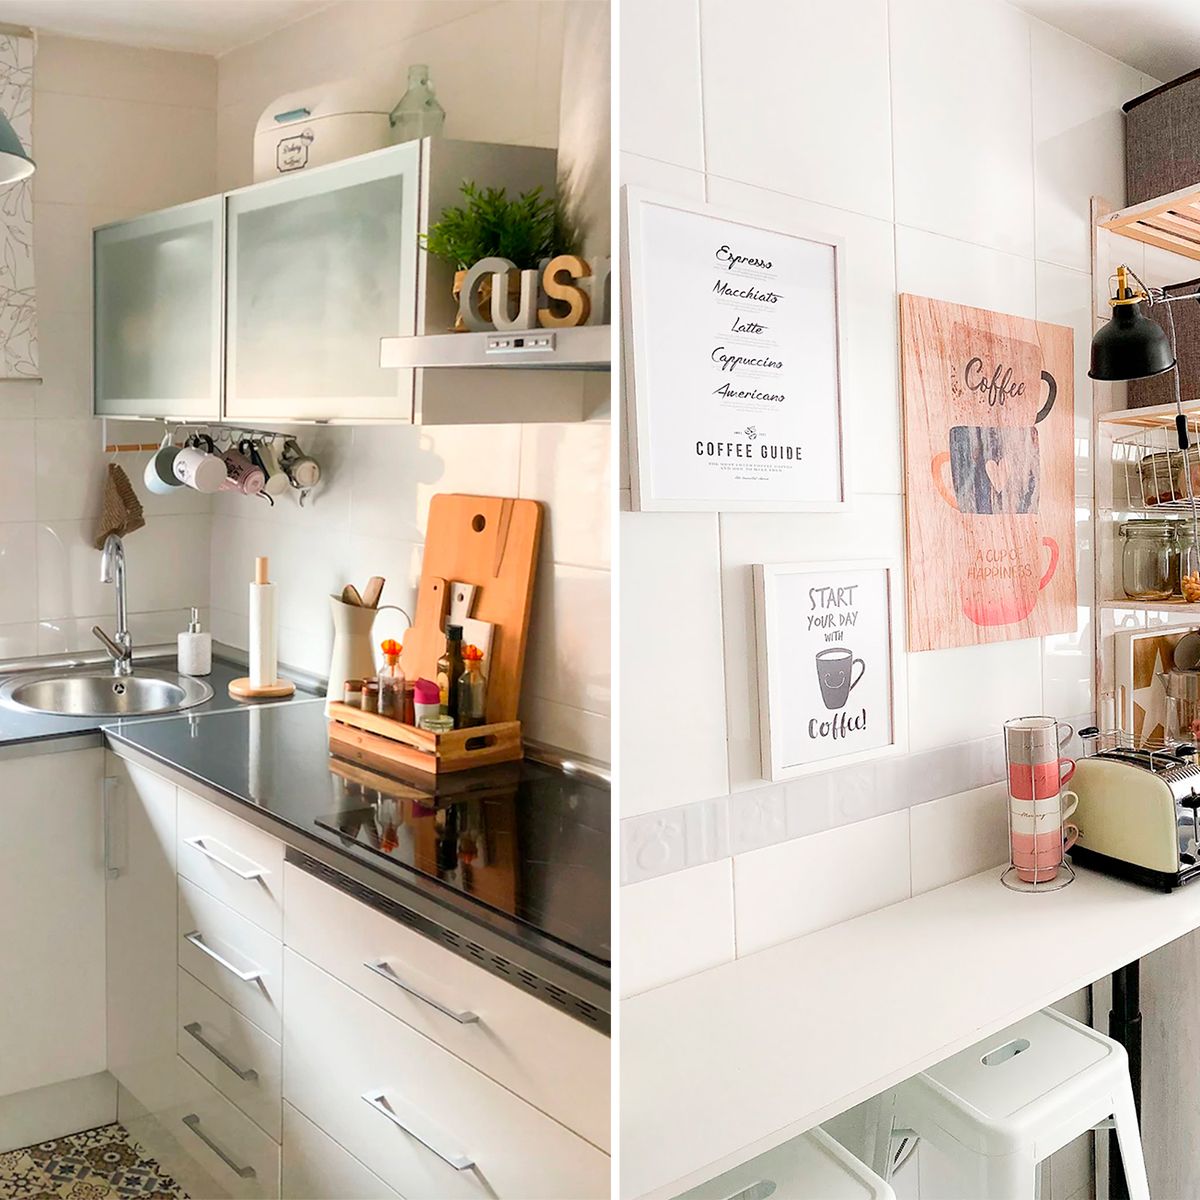 Ikea tiene una estantería compacta y económica que encaja hasta en las  cocinas o los baños más pequeños